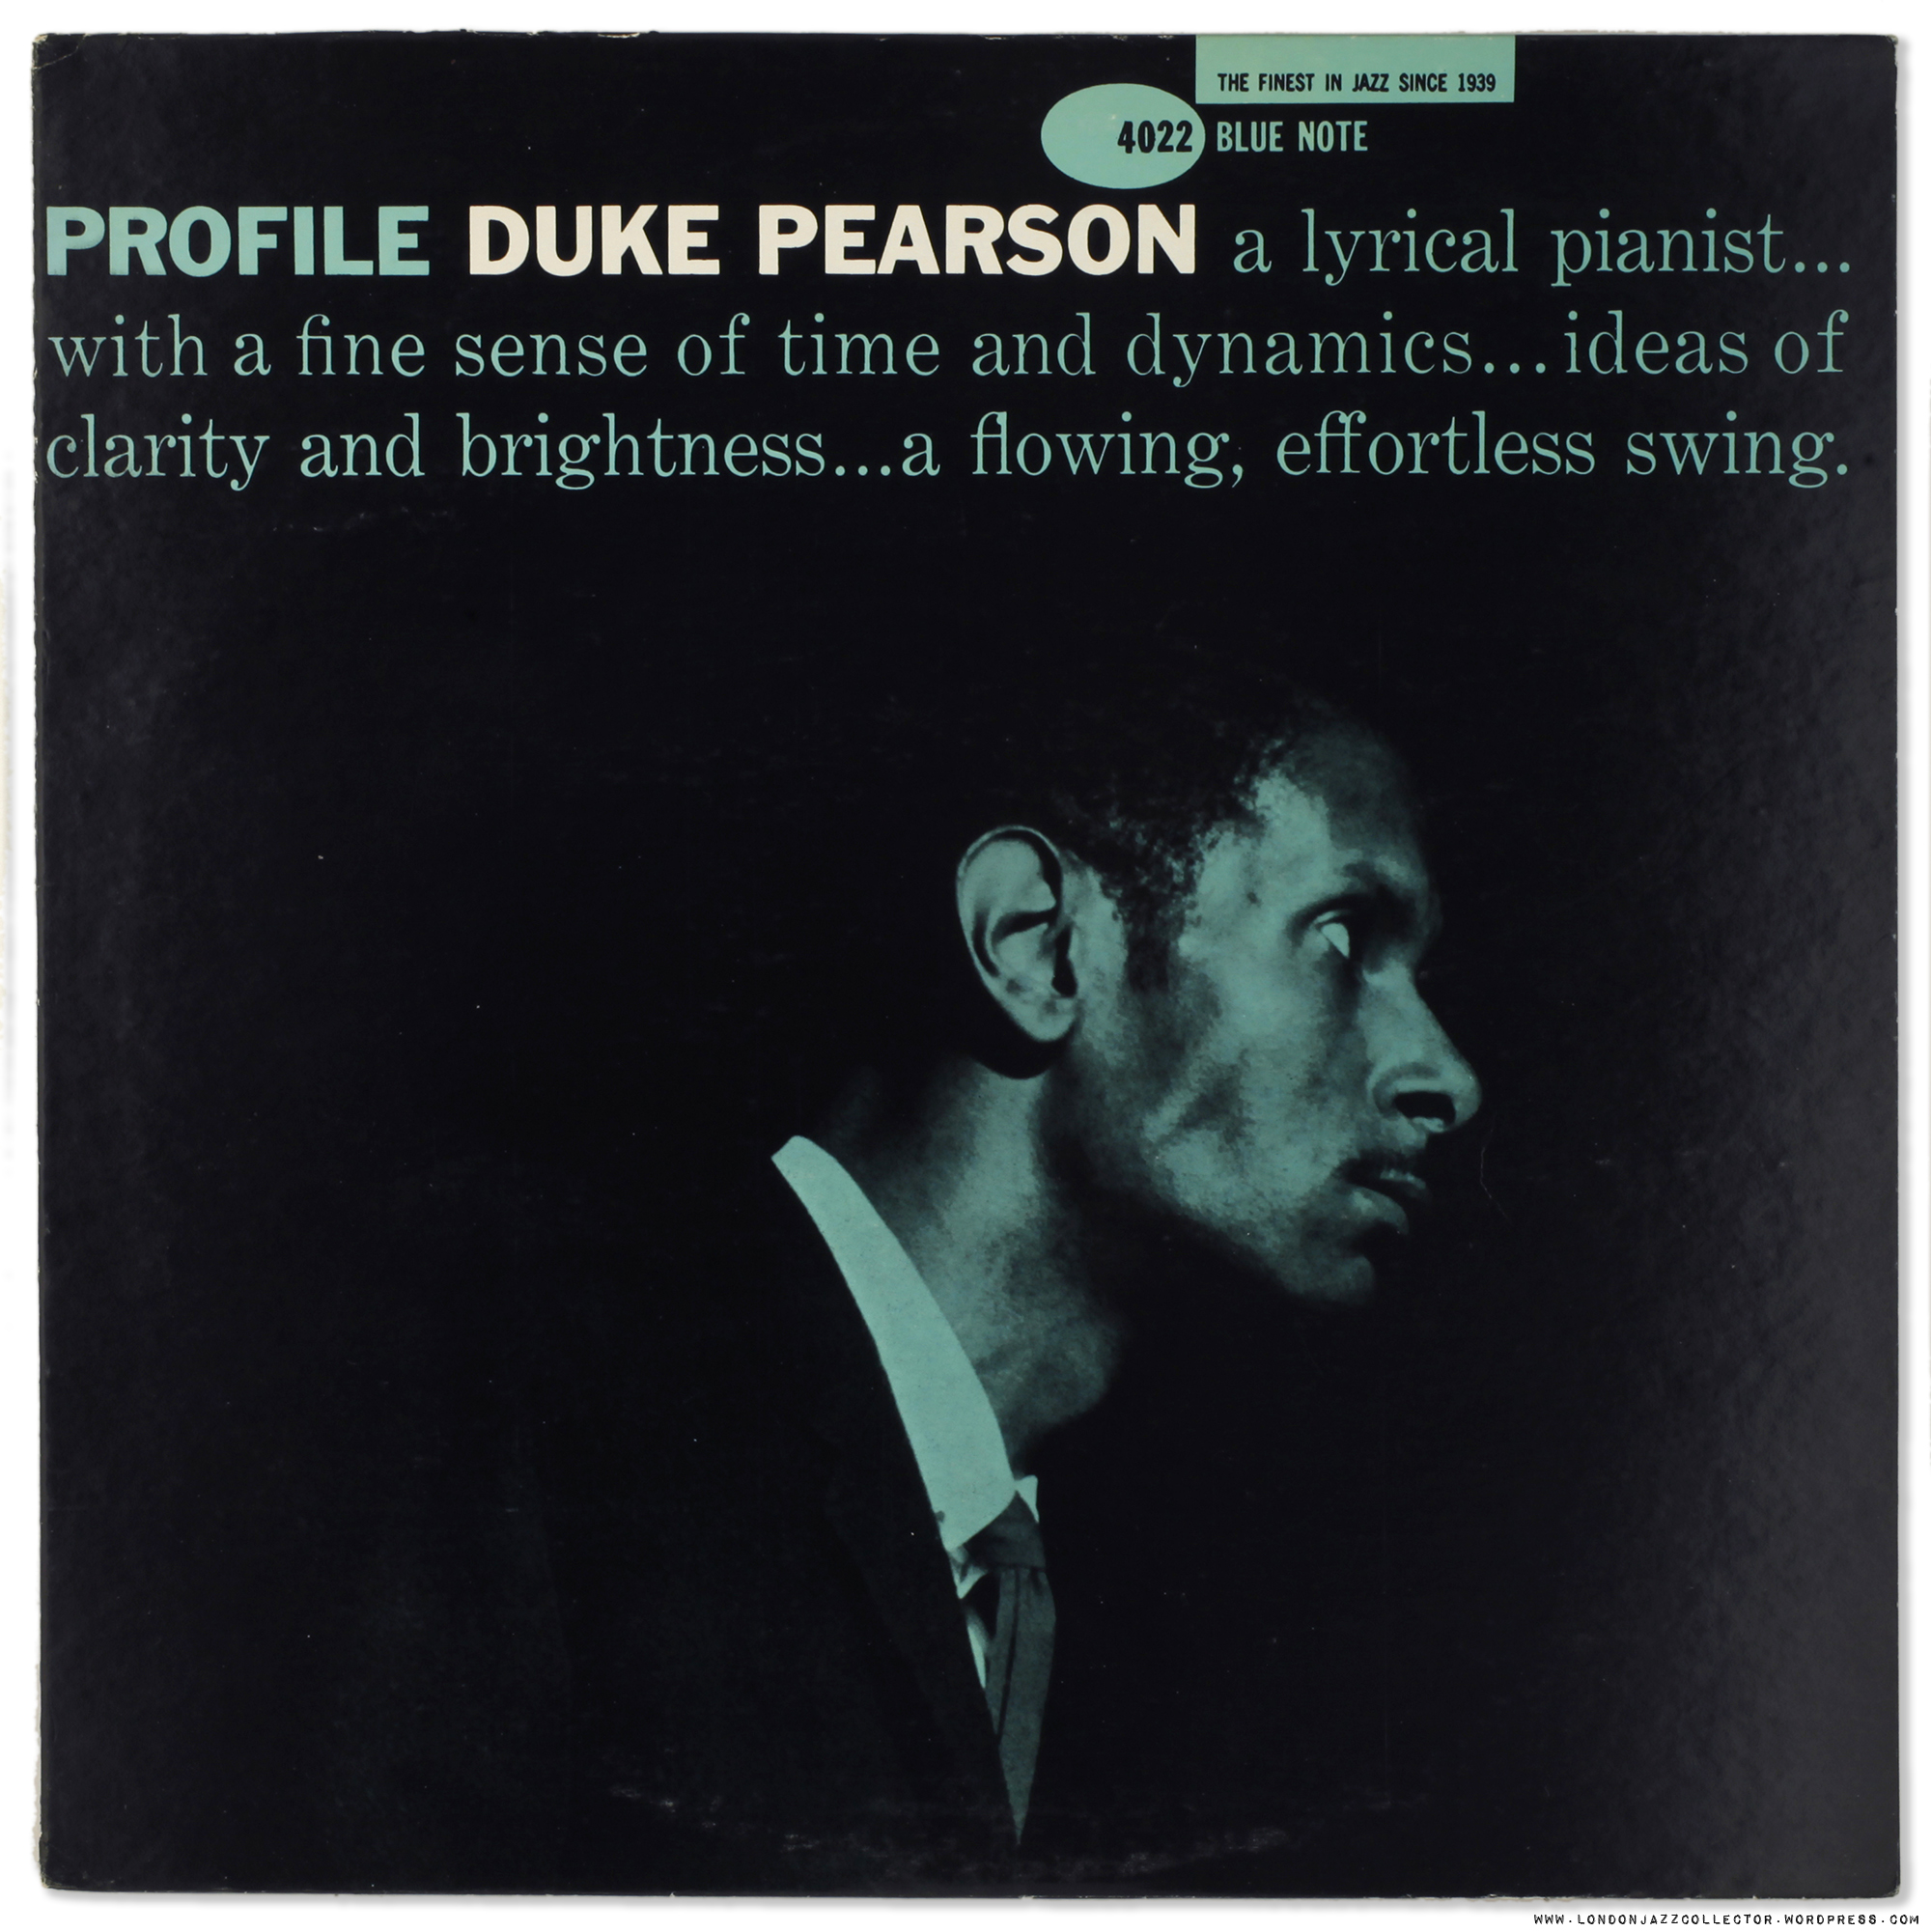 Duke Pearson: Profile (1959) Blue Note | LondonJazzCollector